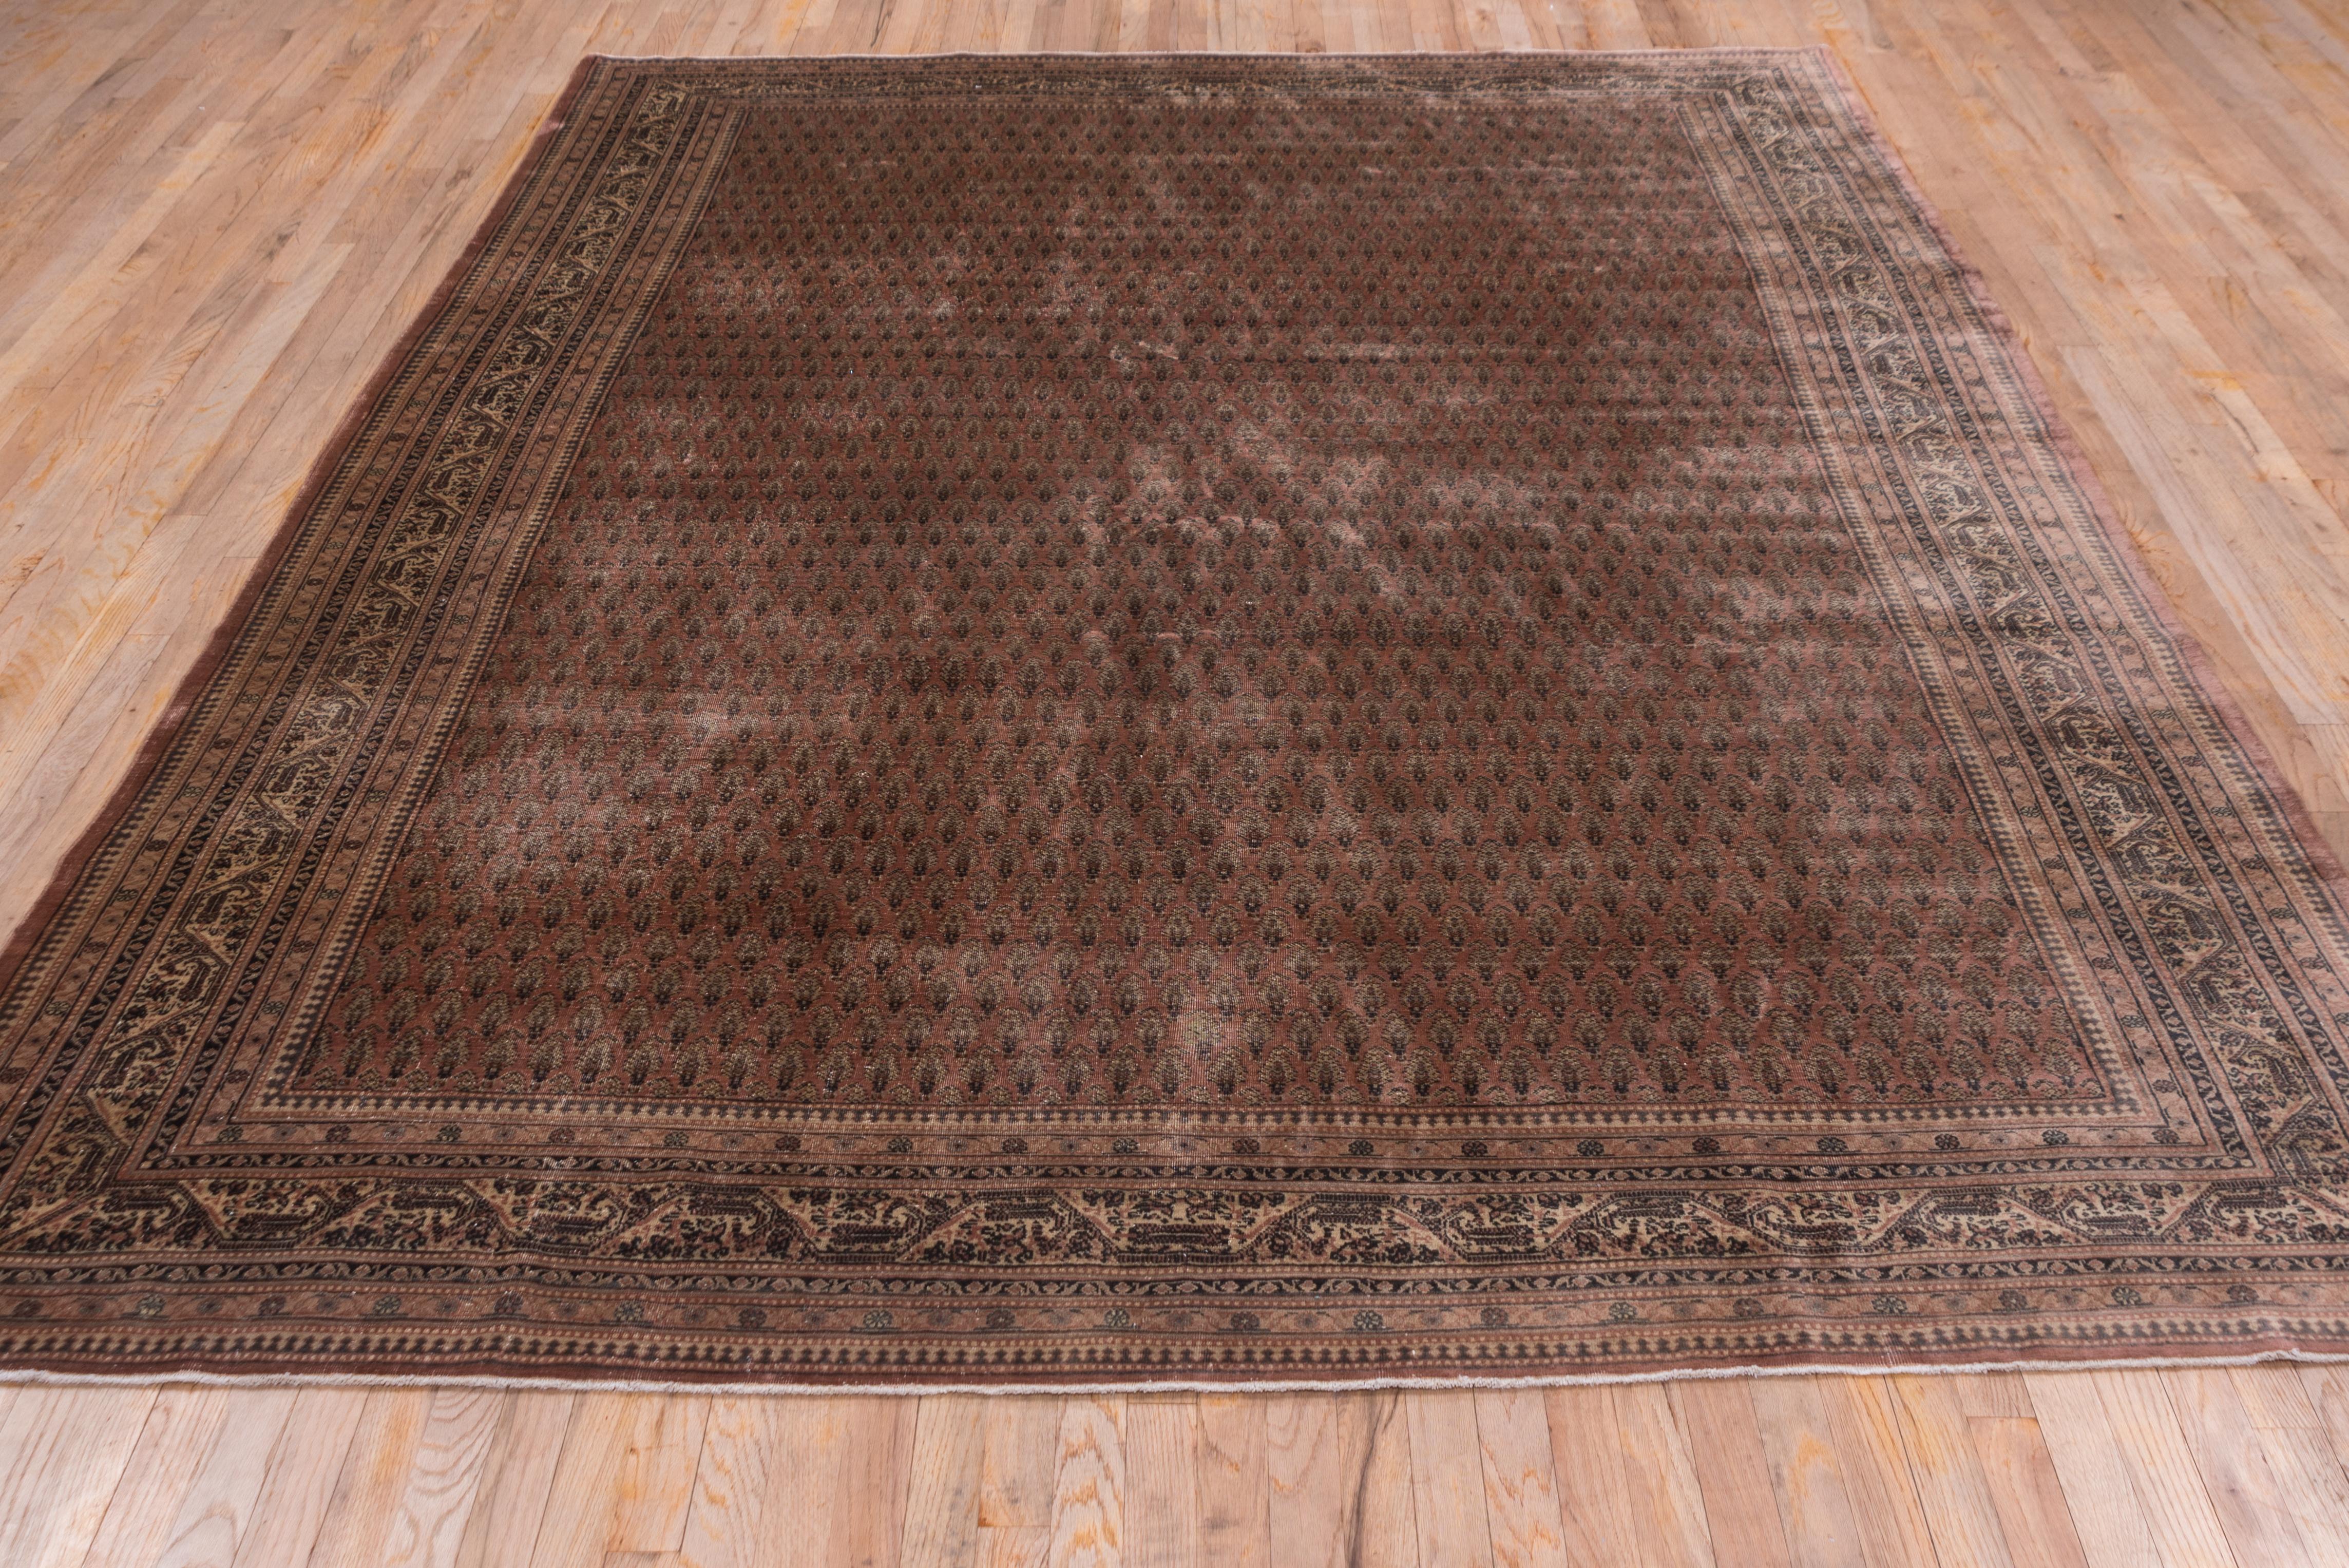 Hand-Knotted Antique Turkish Brown Sivas Carpet, circa 1930s